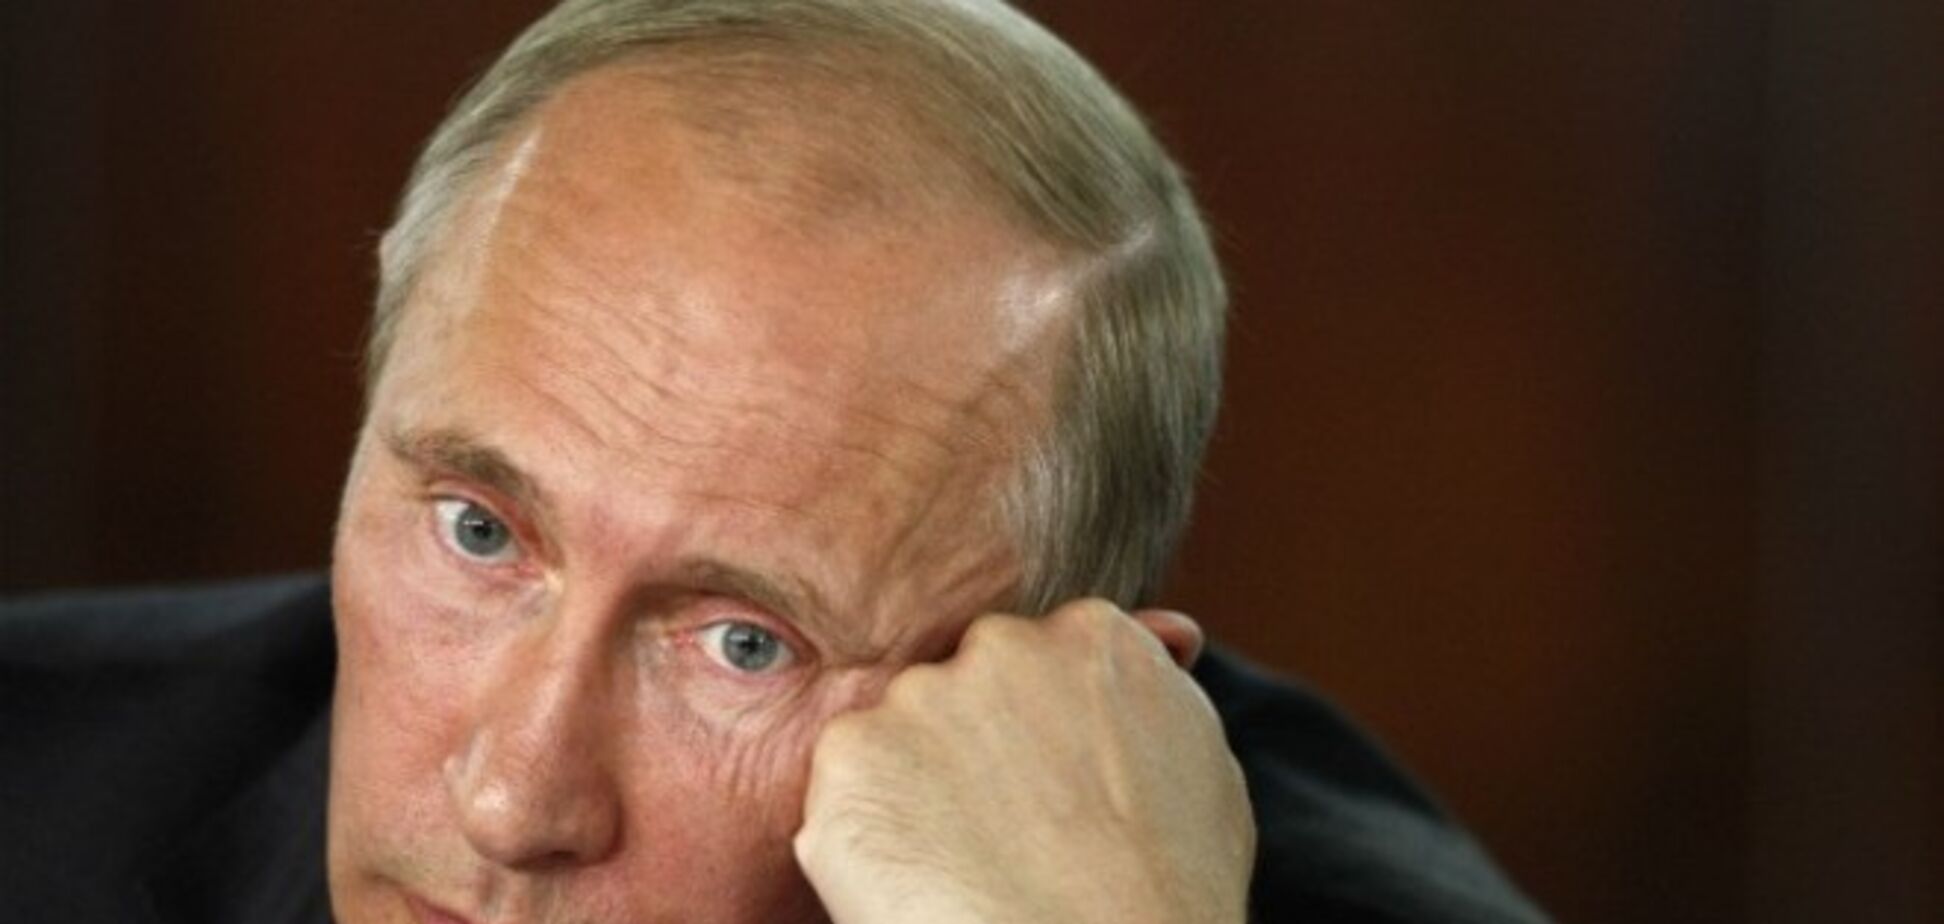 Рейтинг Путина начал снижаться впервые с начала года 